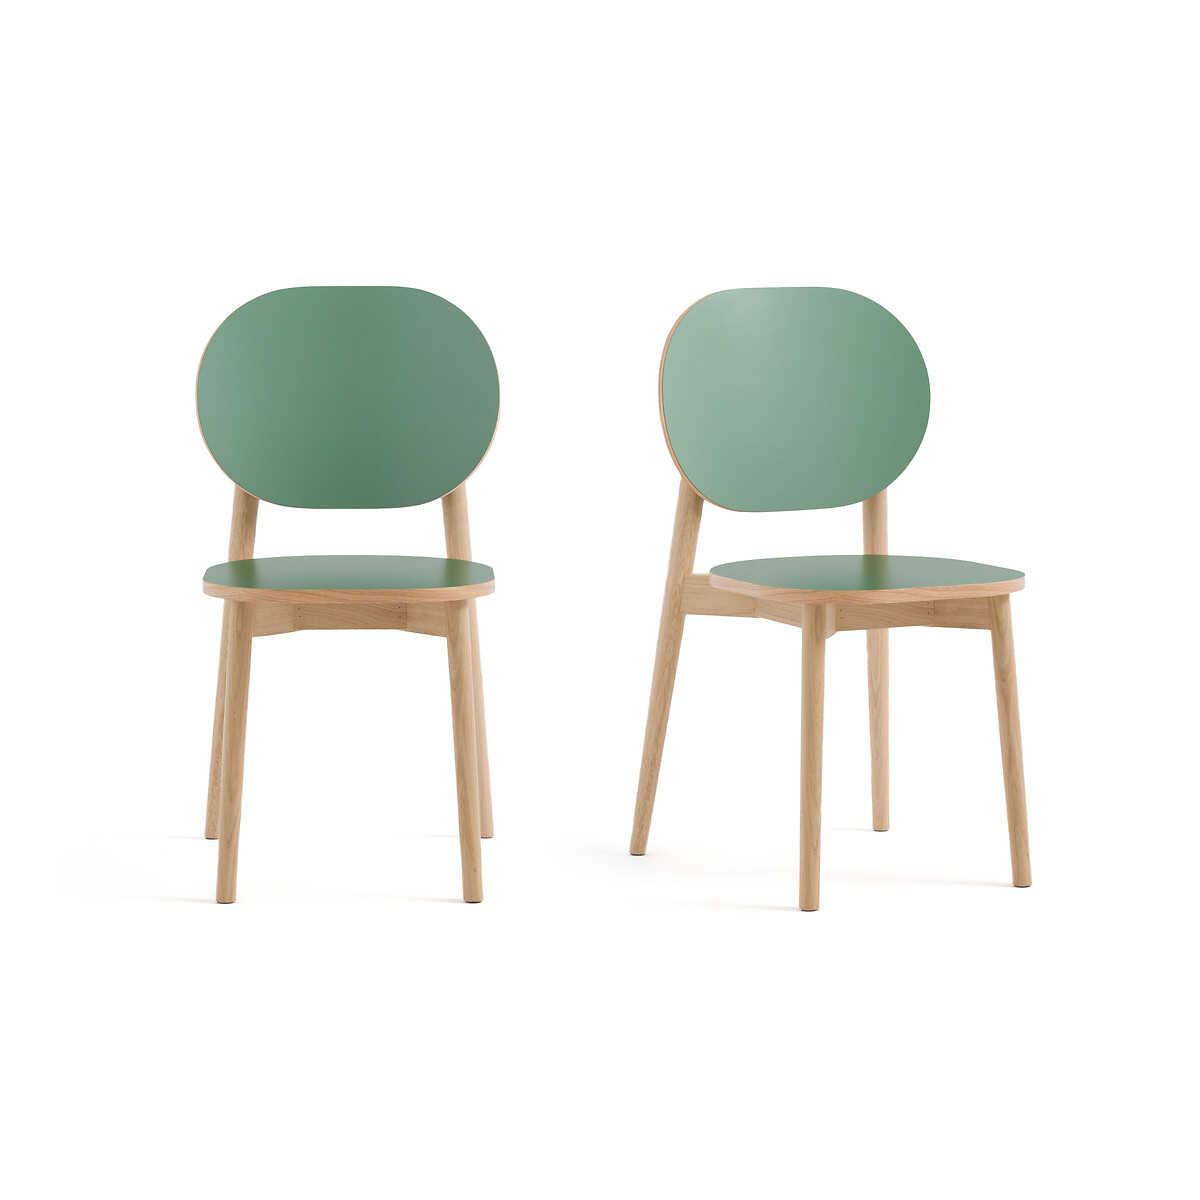 Комплект из двух стульев Quillan La Redoute единый размер каштановый комплект из 2 стульев jimi la redoute единый размер зеленый